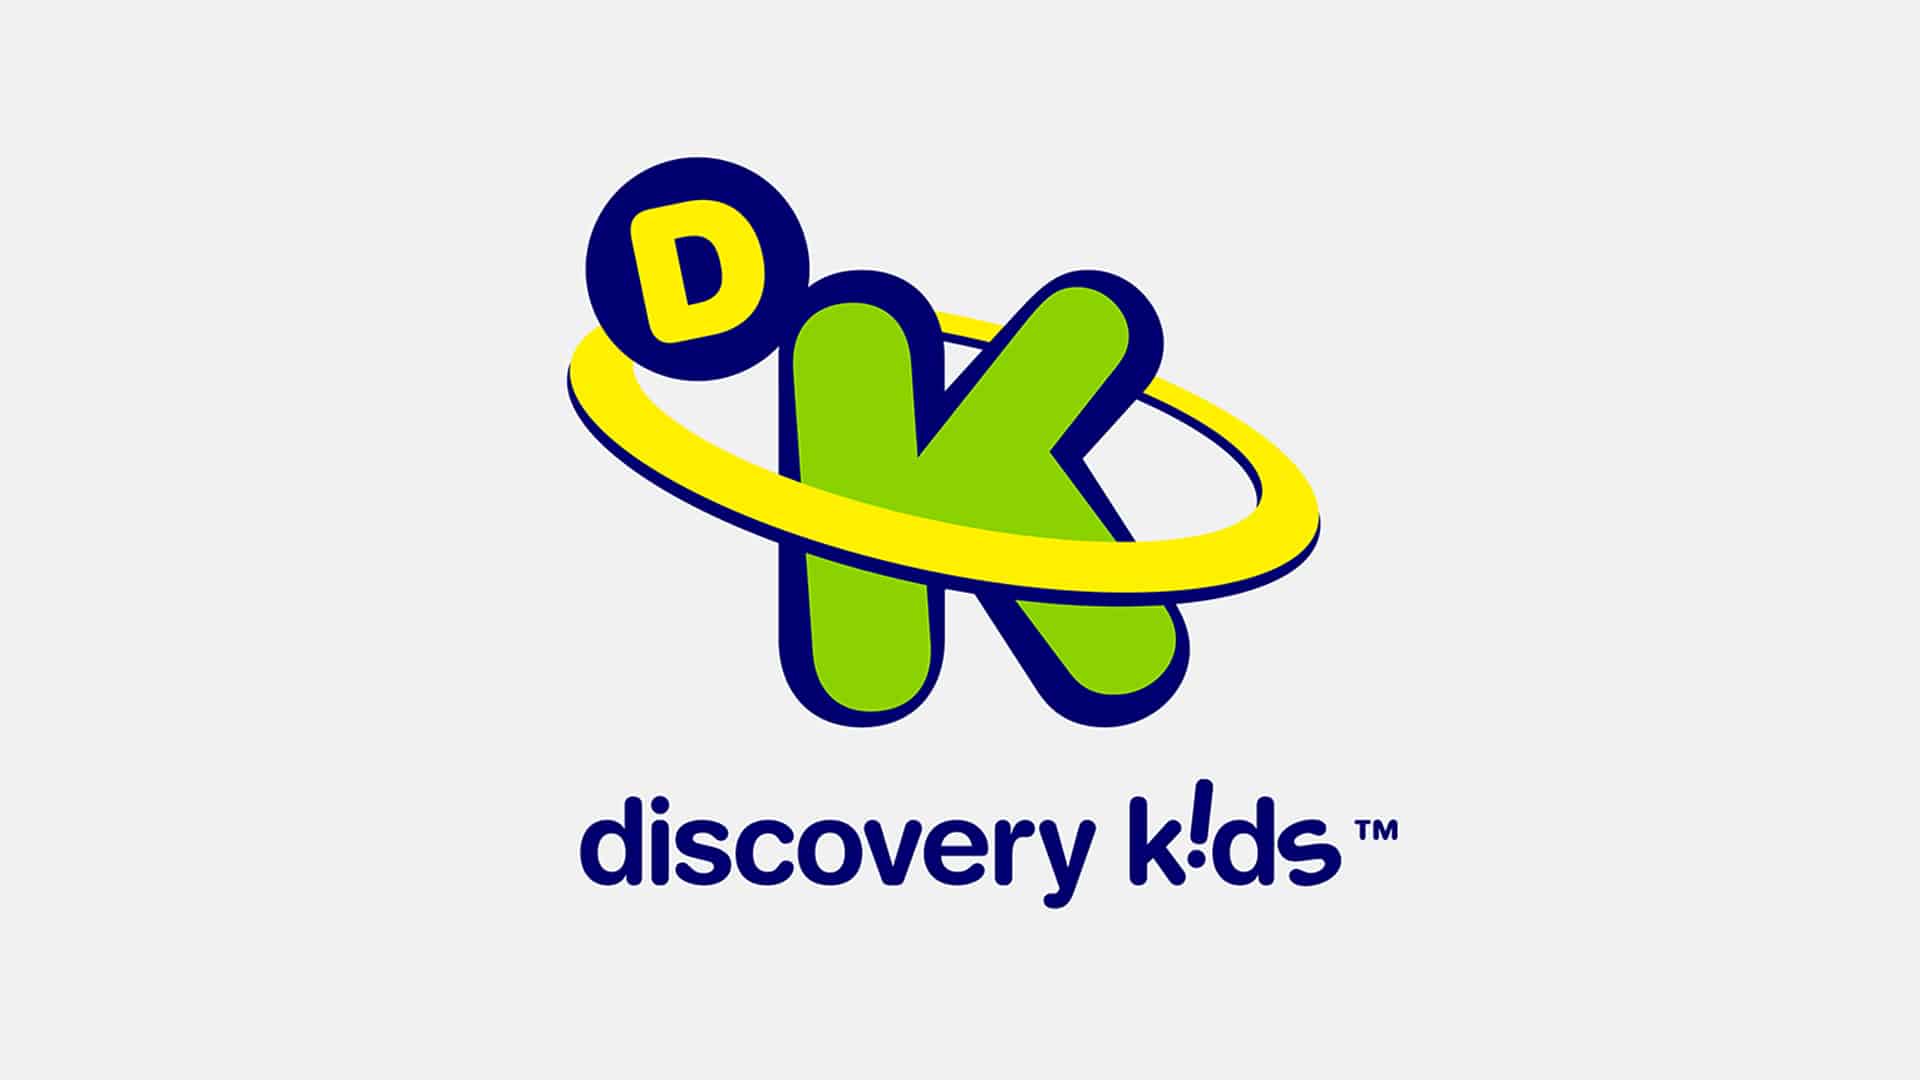 Discovery Kids fecha dezembro na liderança da TV paga; SporTV é vice